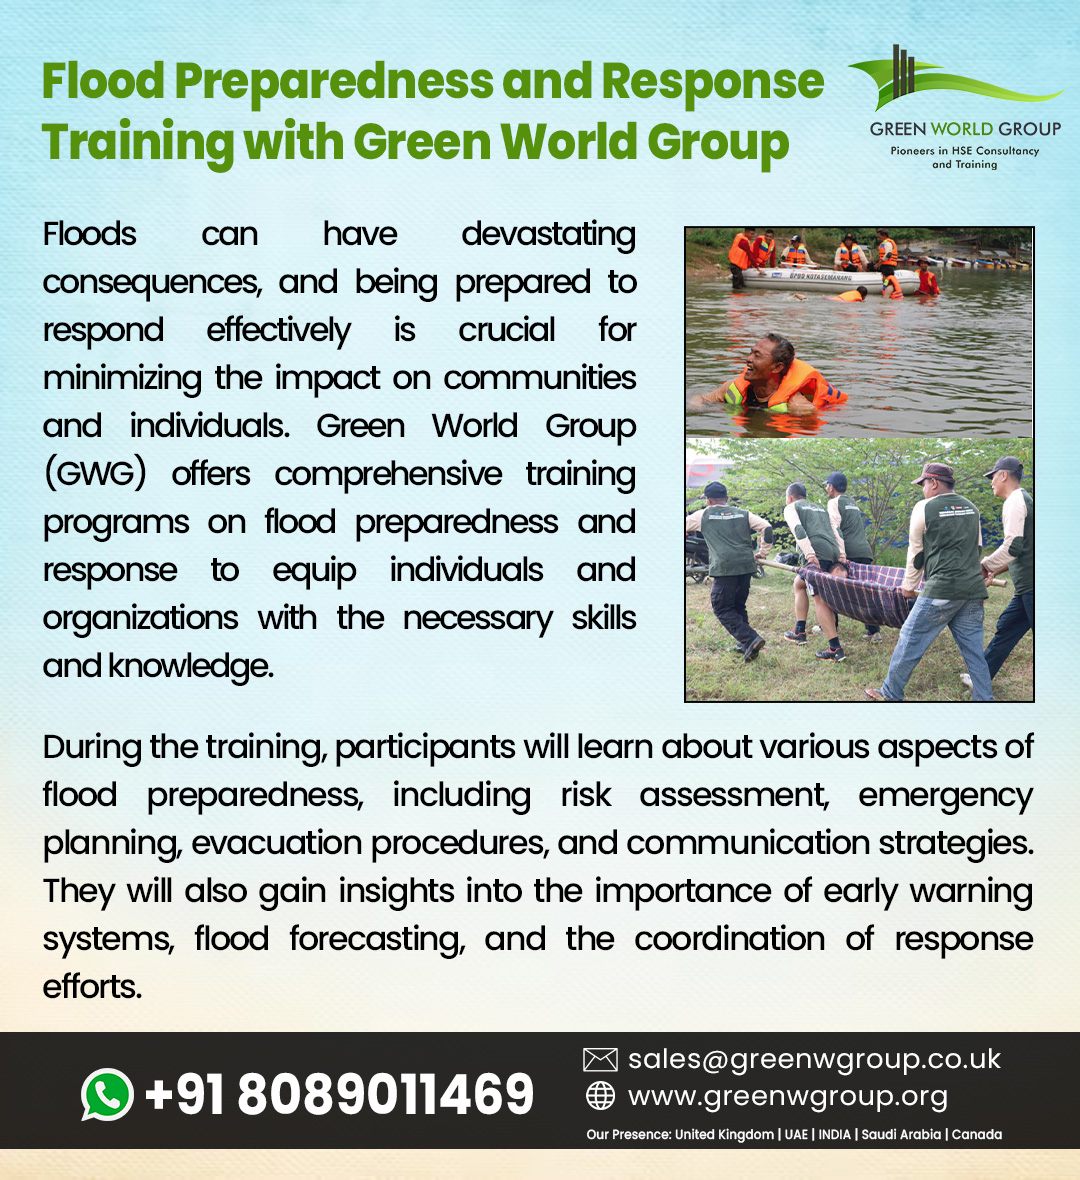 Visit Us : greenwgroup.co.uk  
Contact Us : +918089011469
Email : aswathi.s@greenwgroup.com

#FloodPreparedness,#ResponseTraining,#GreenWorldGroup,#EmergencyPreparedness,#DisasterResponse,#FloodSafety,#GWGTraining